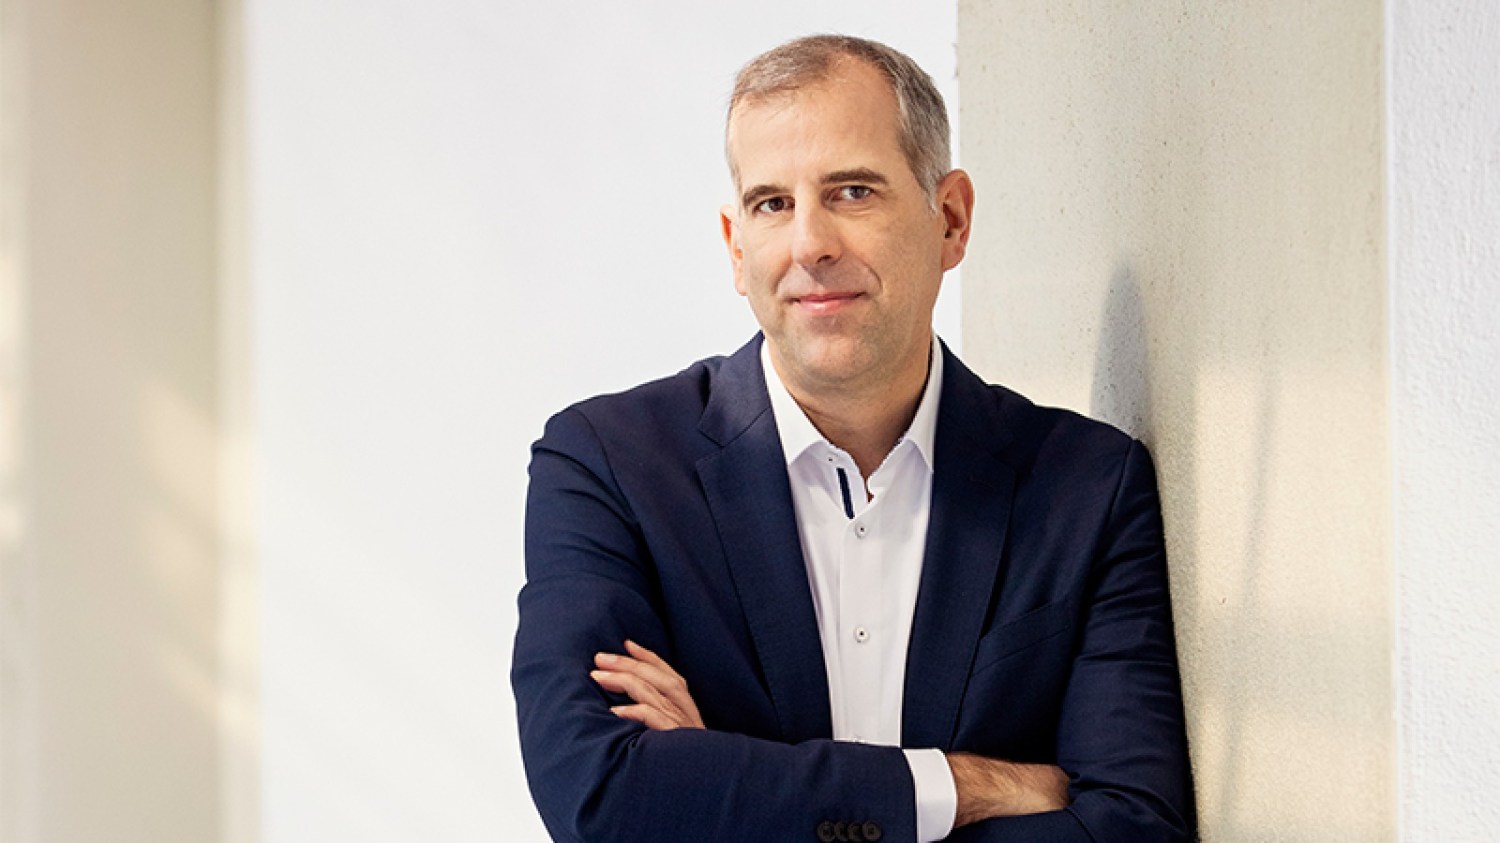 RTL Deutschland CEO Stephan Schmitter